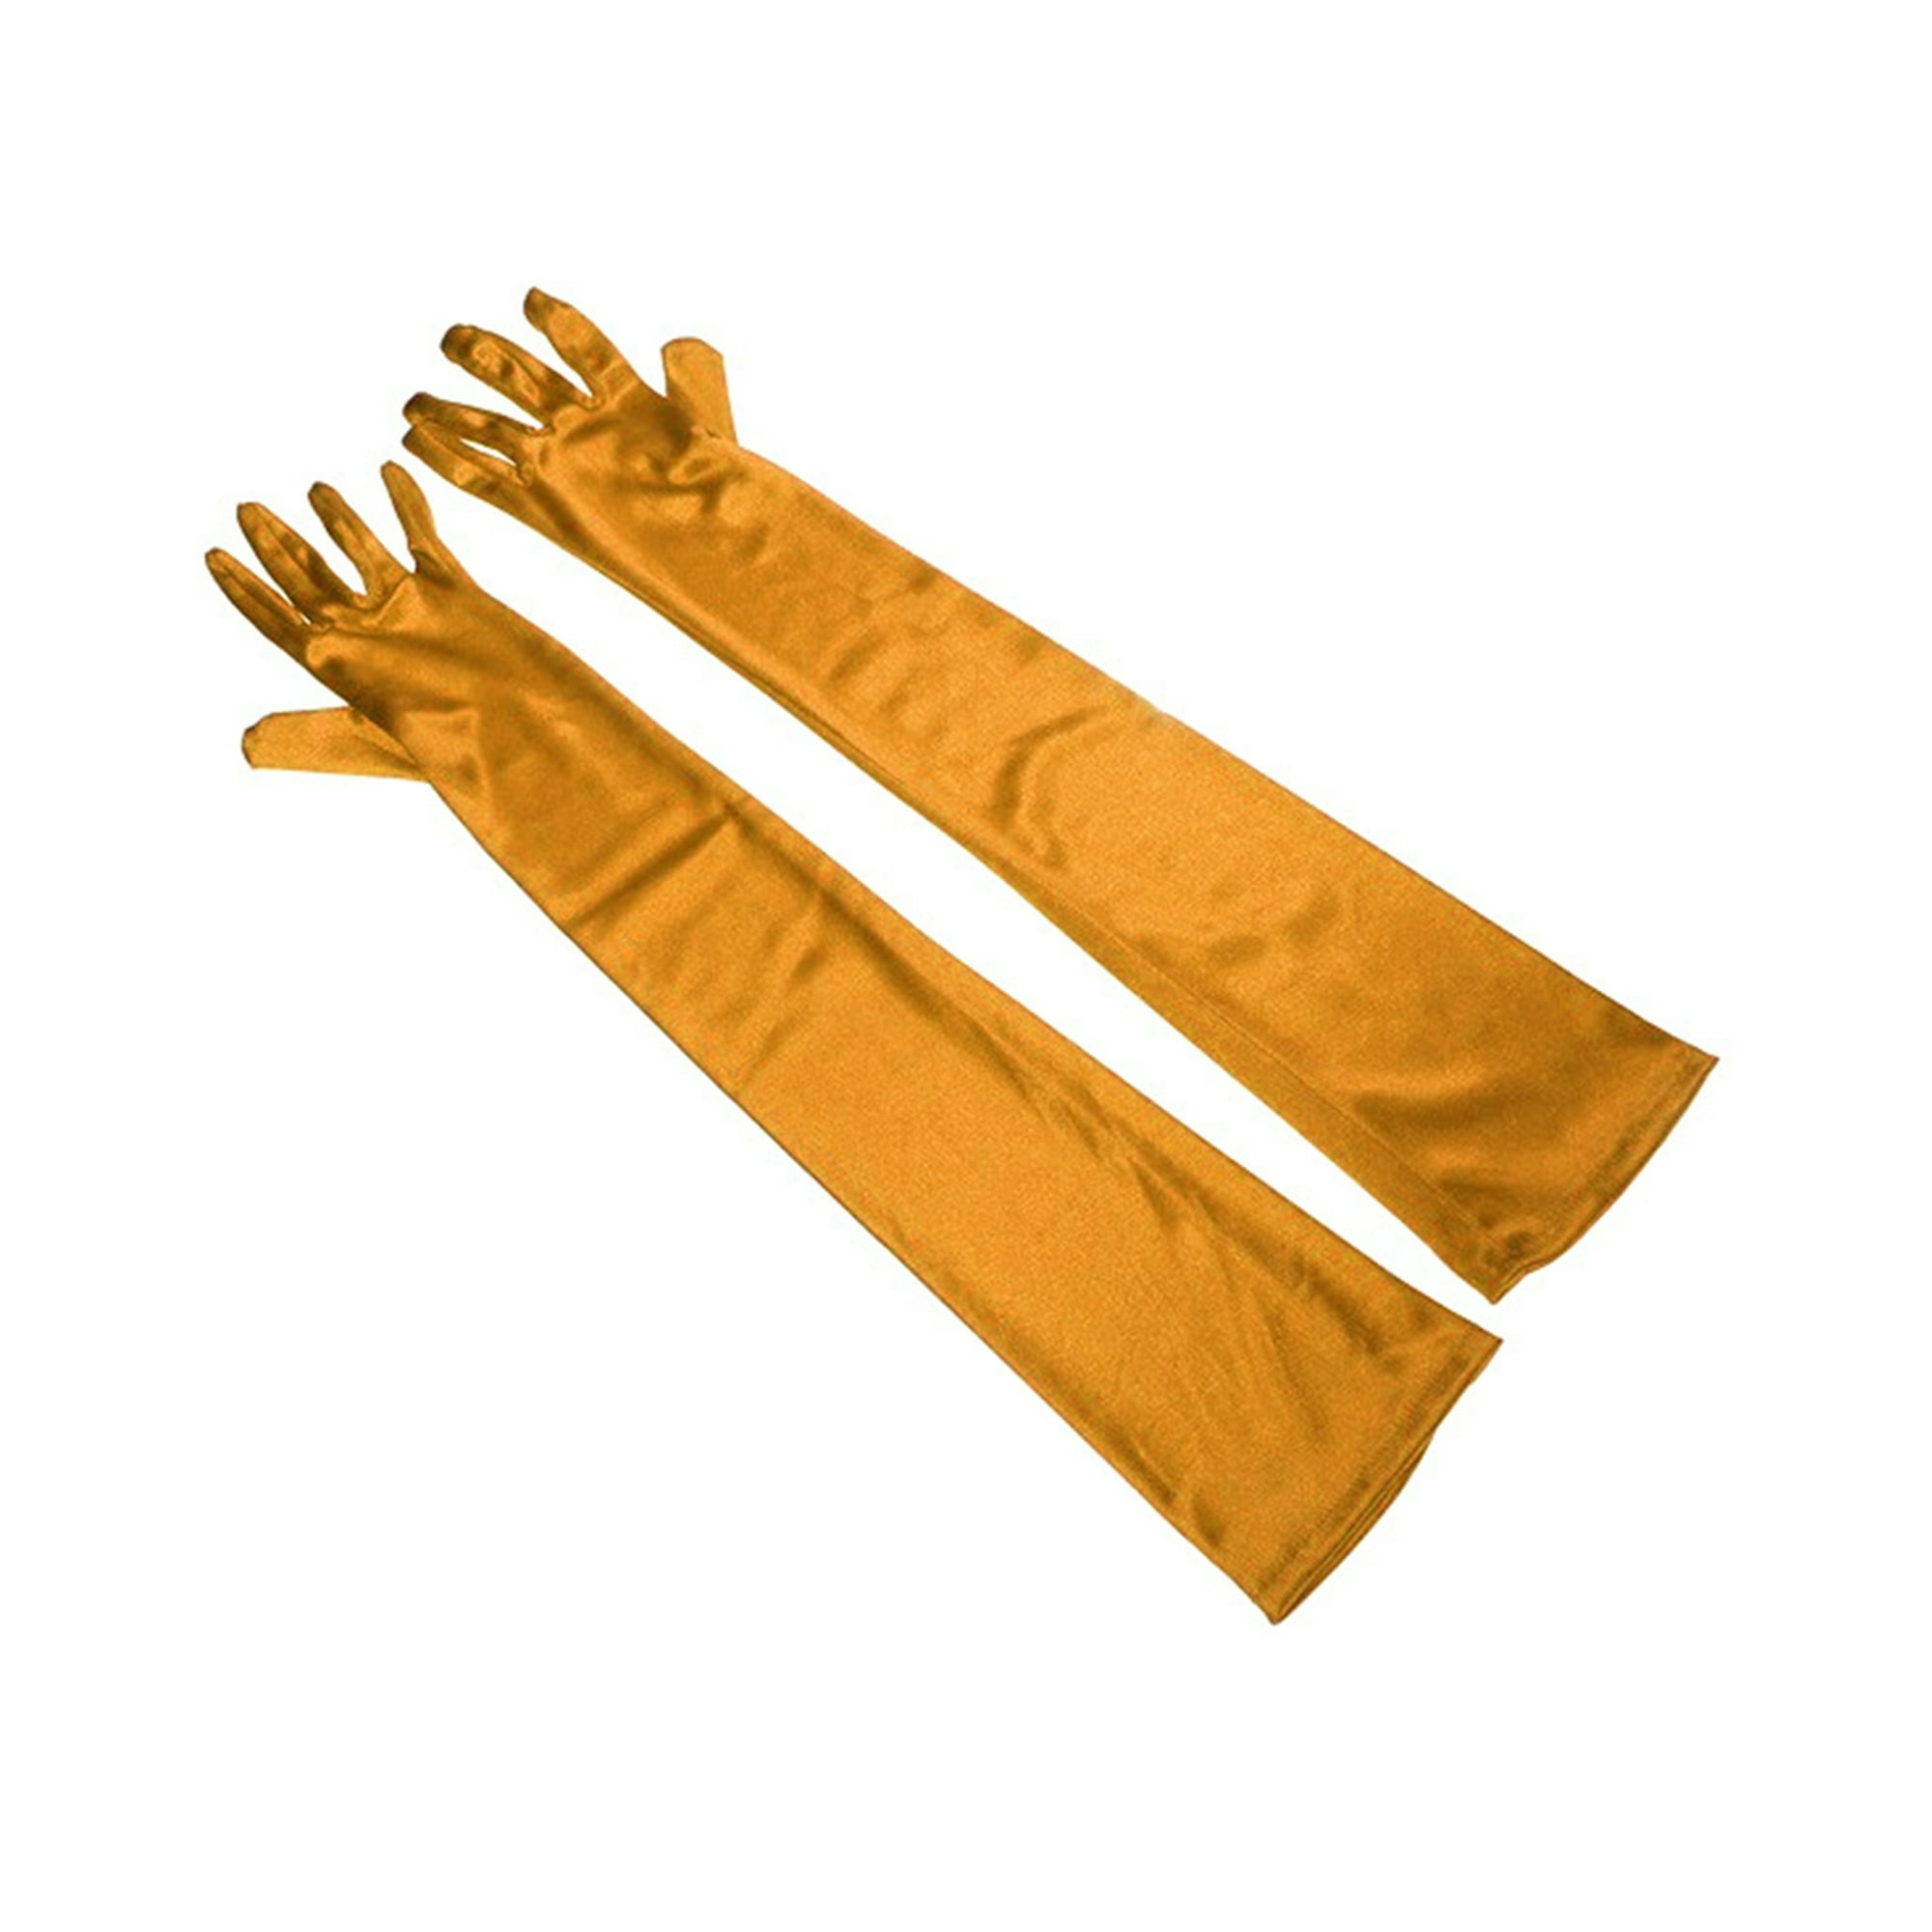 Sonducket 1 par de guantes de punto bordados para mujer invierno